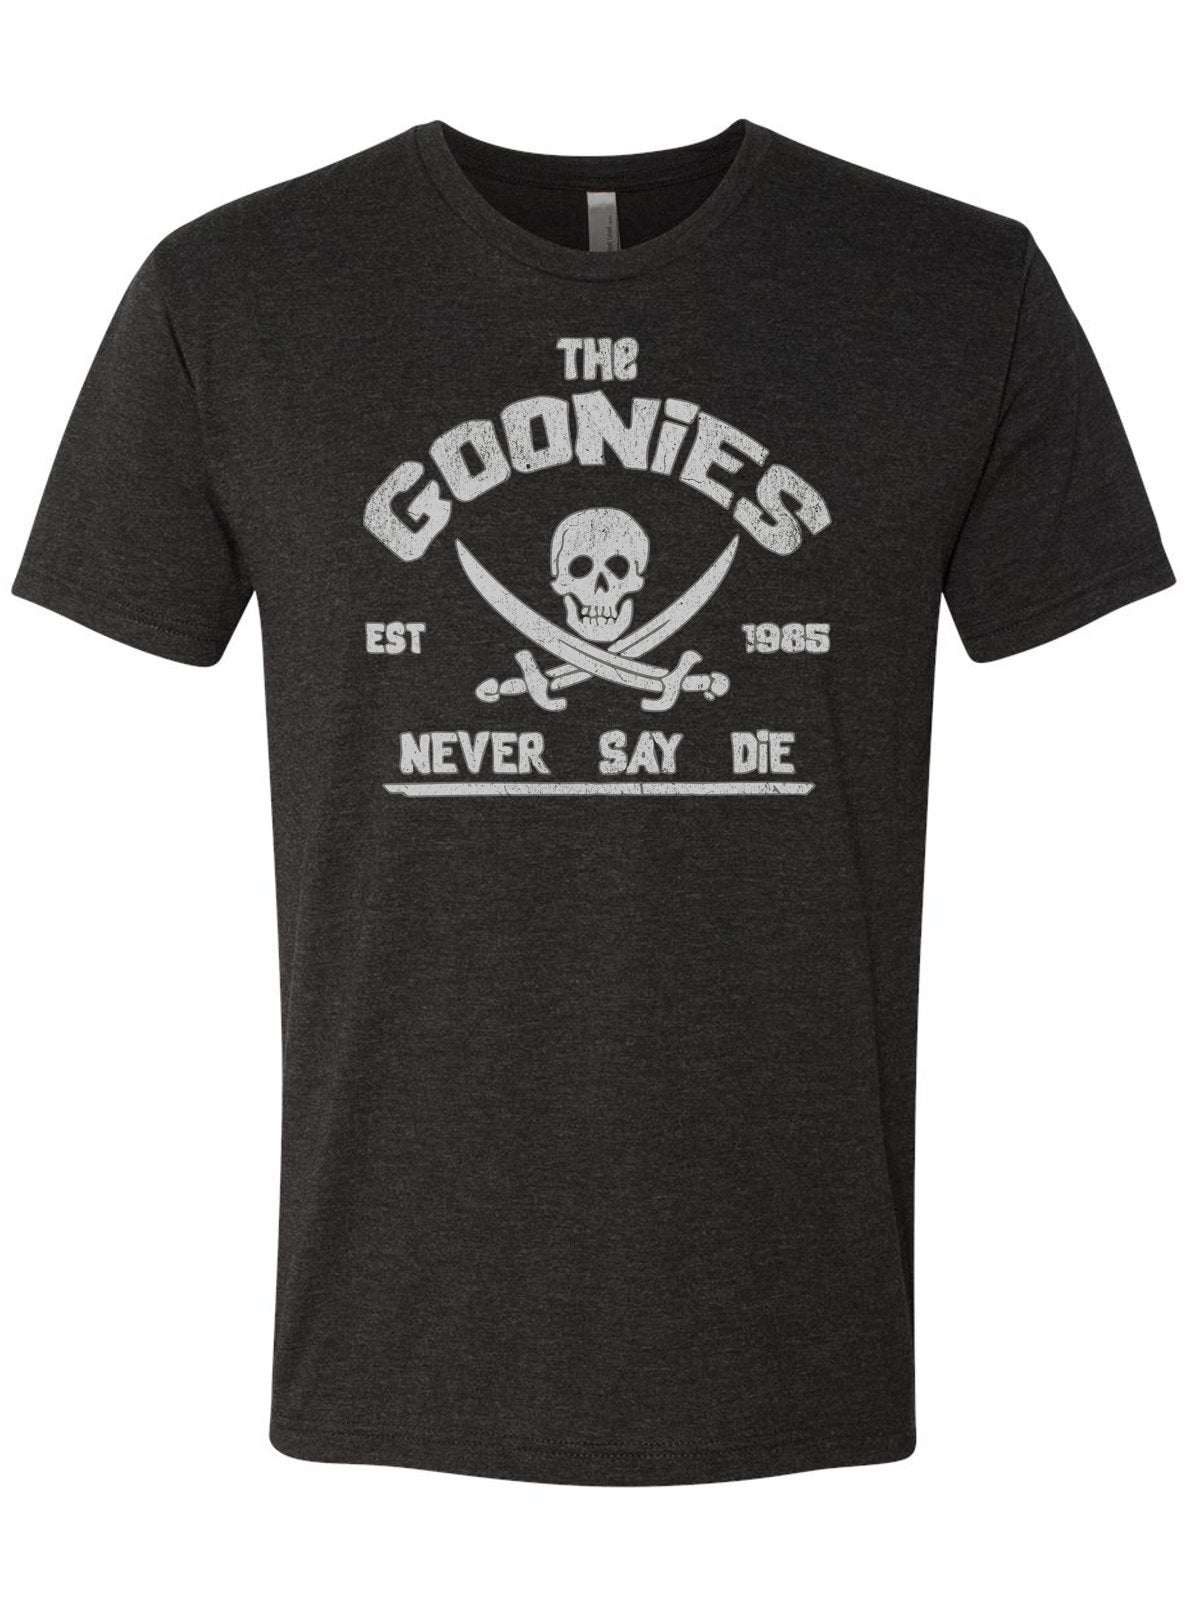 Vintage Black Goonies Never Say Die T-Shirt | Retro Men's Apparel -